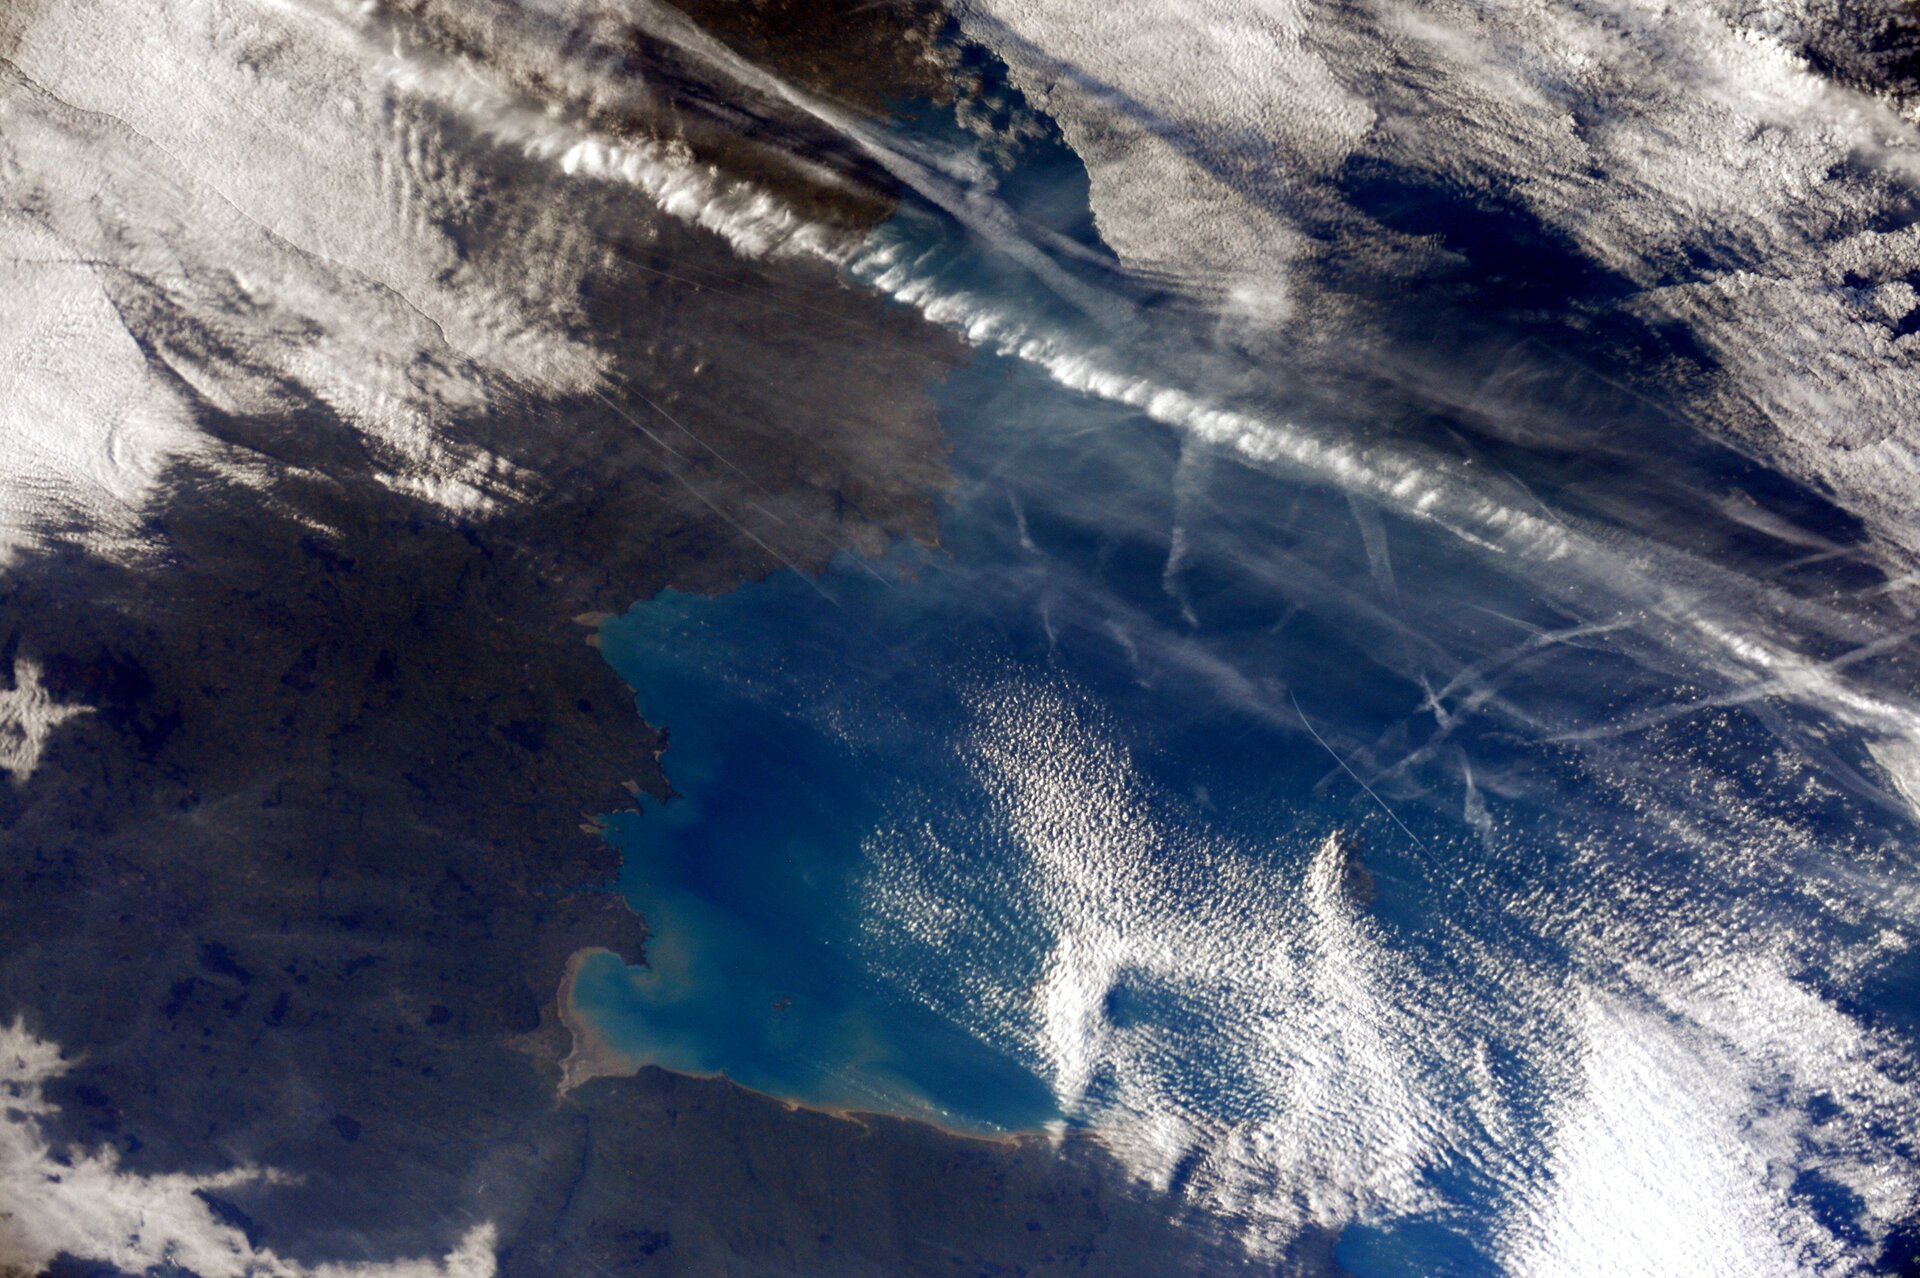 Golfe de Saint-Malo, France, vu depuis la Station spatiale internationale